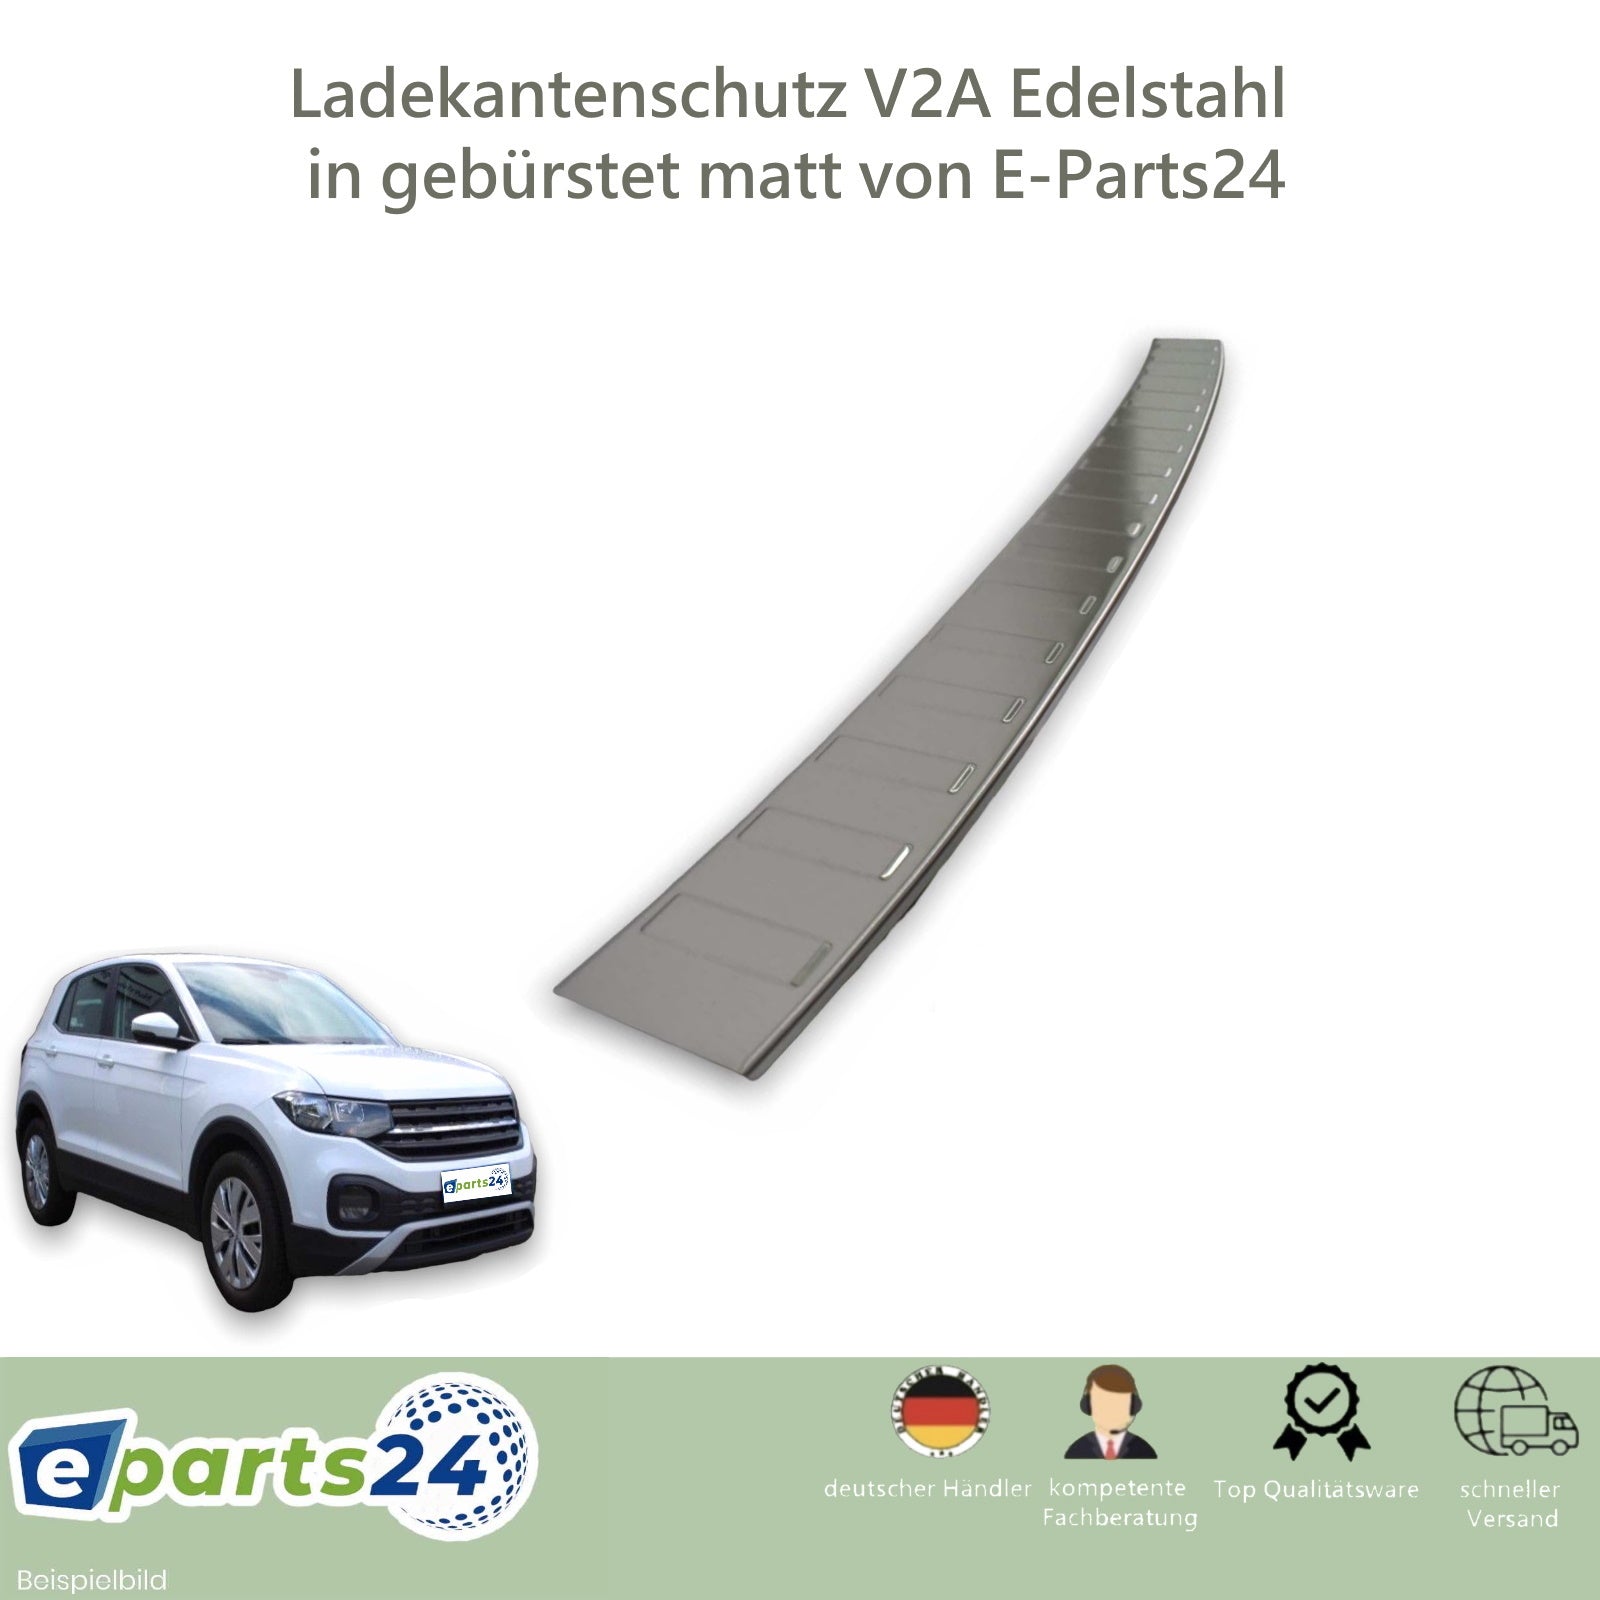 Ladekantenschutz Edelstahl, CHROM - MATT, für VW T-Cross